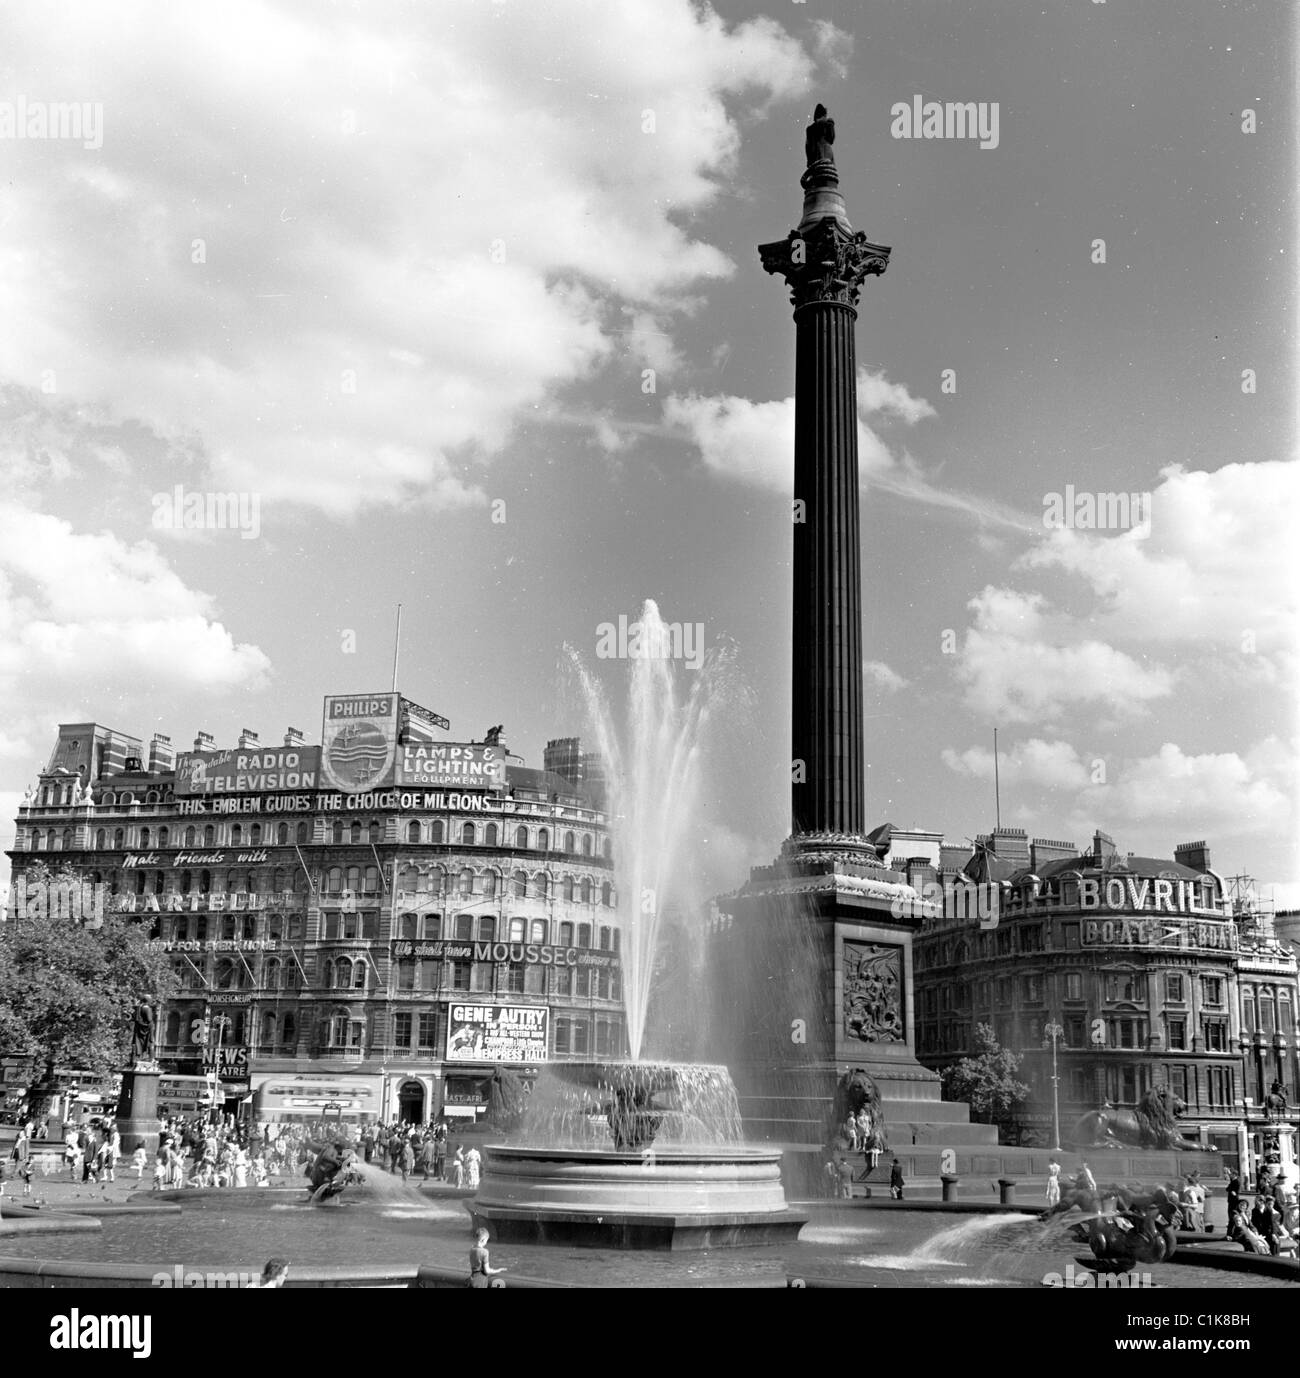 1950er Jahre, ein Blick aus dieser Ära auf die Nelson's Column am Trafalgar Square, Westminster, London, ein Denkmal, das 1843 zu Ehren von Horatio Nelson erbaut wurde. Stockfoto